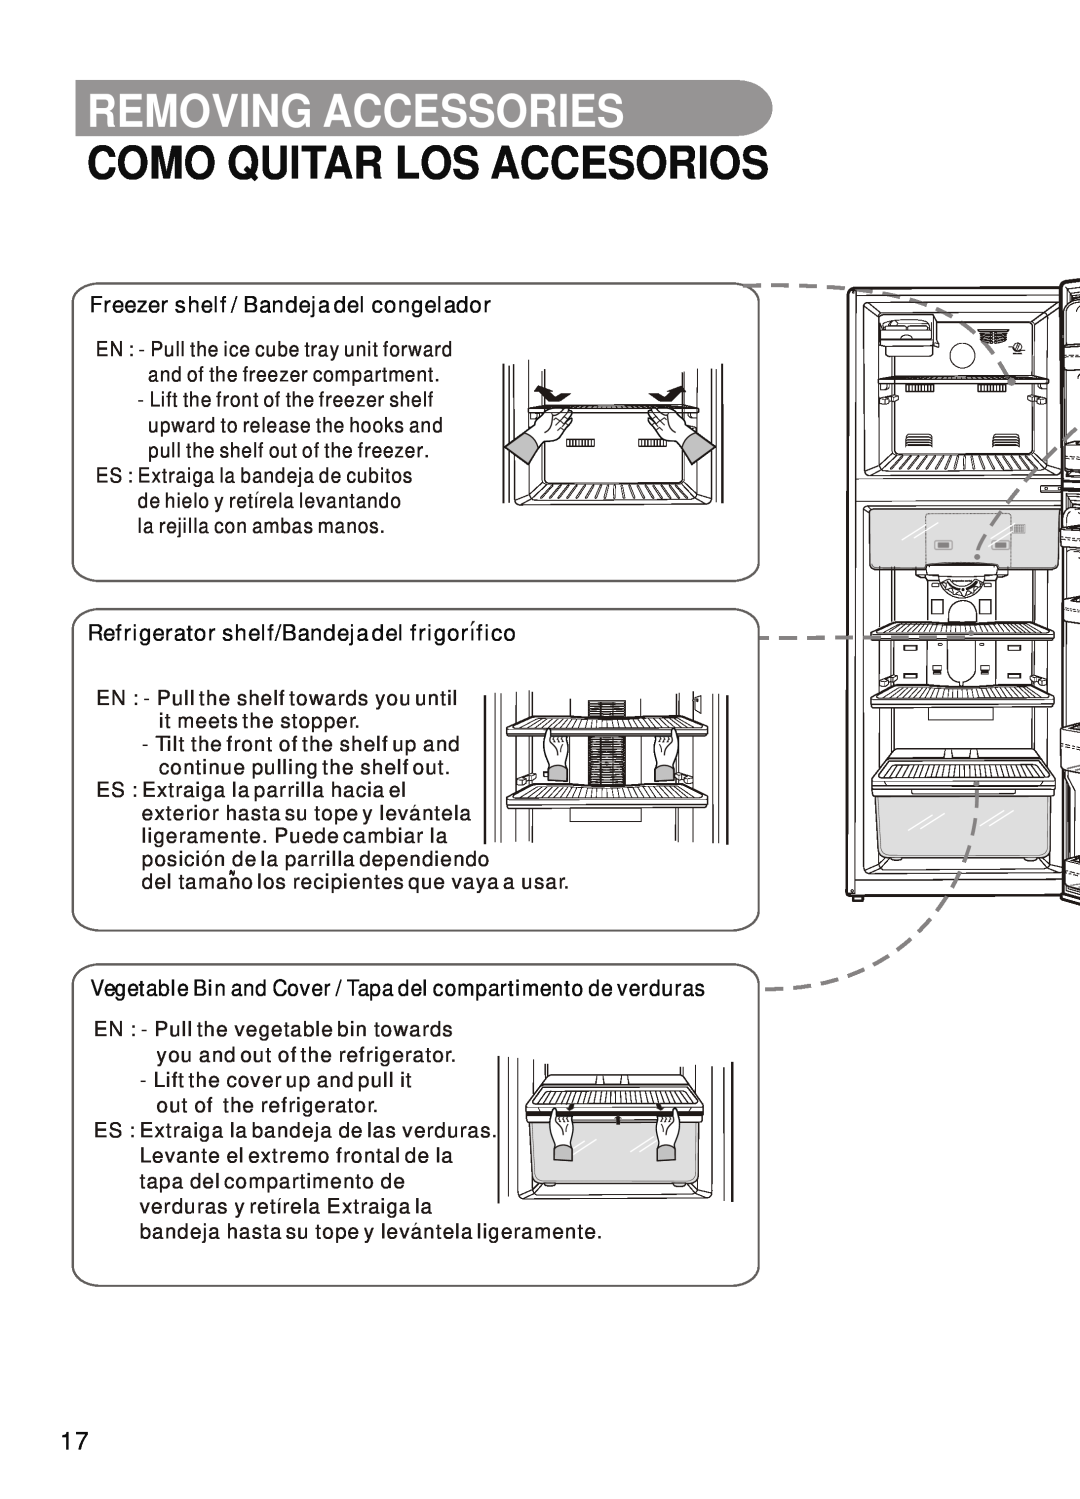 Samsung SR-42/43, SR-32/33 manual Removing Accessories, Como Quitar Los Accesorios, Freezer shelf / Bandeja del congelador 